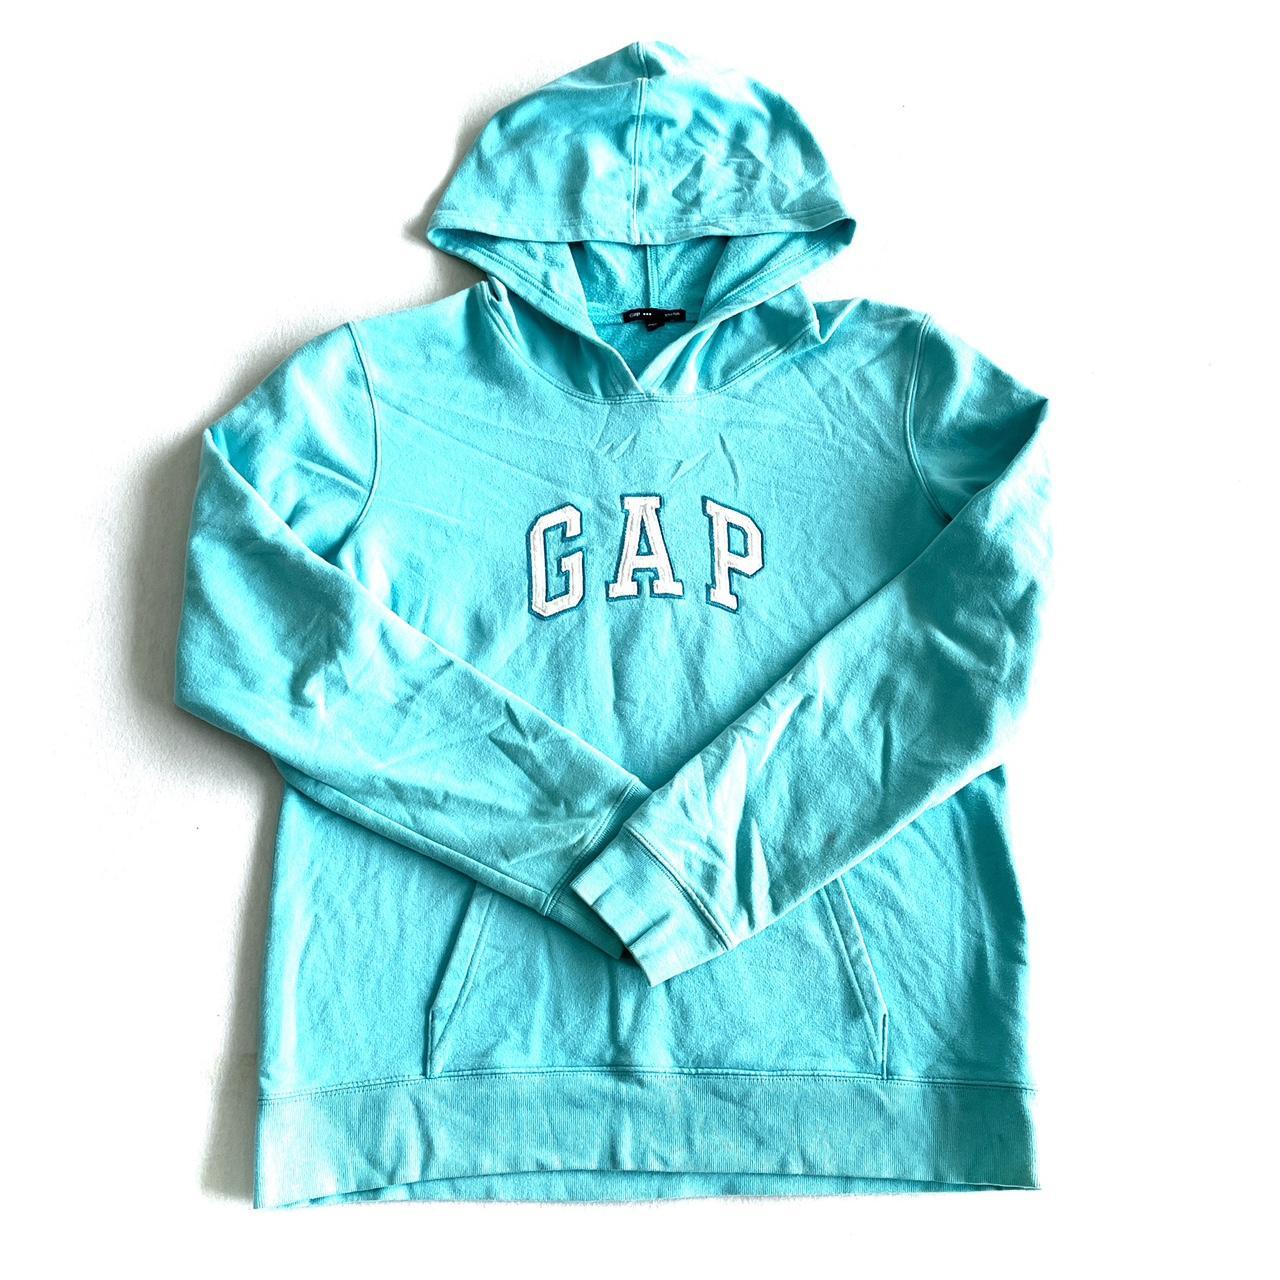 Gap mint gap hoodie big logo sportswear Size... - Depop